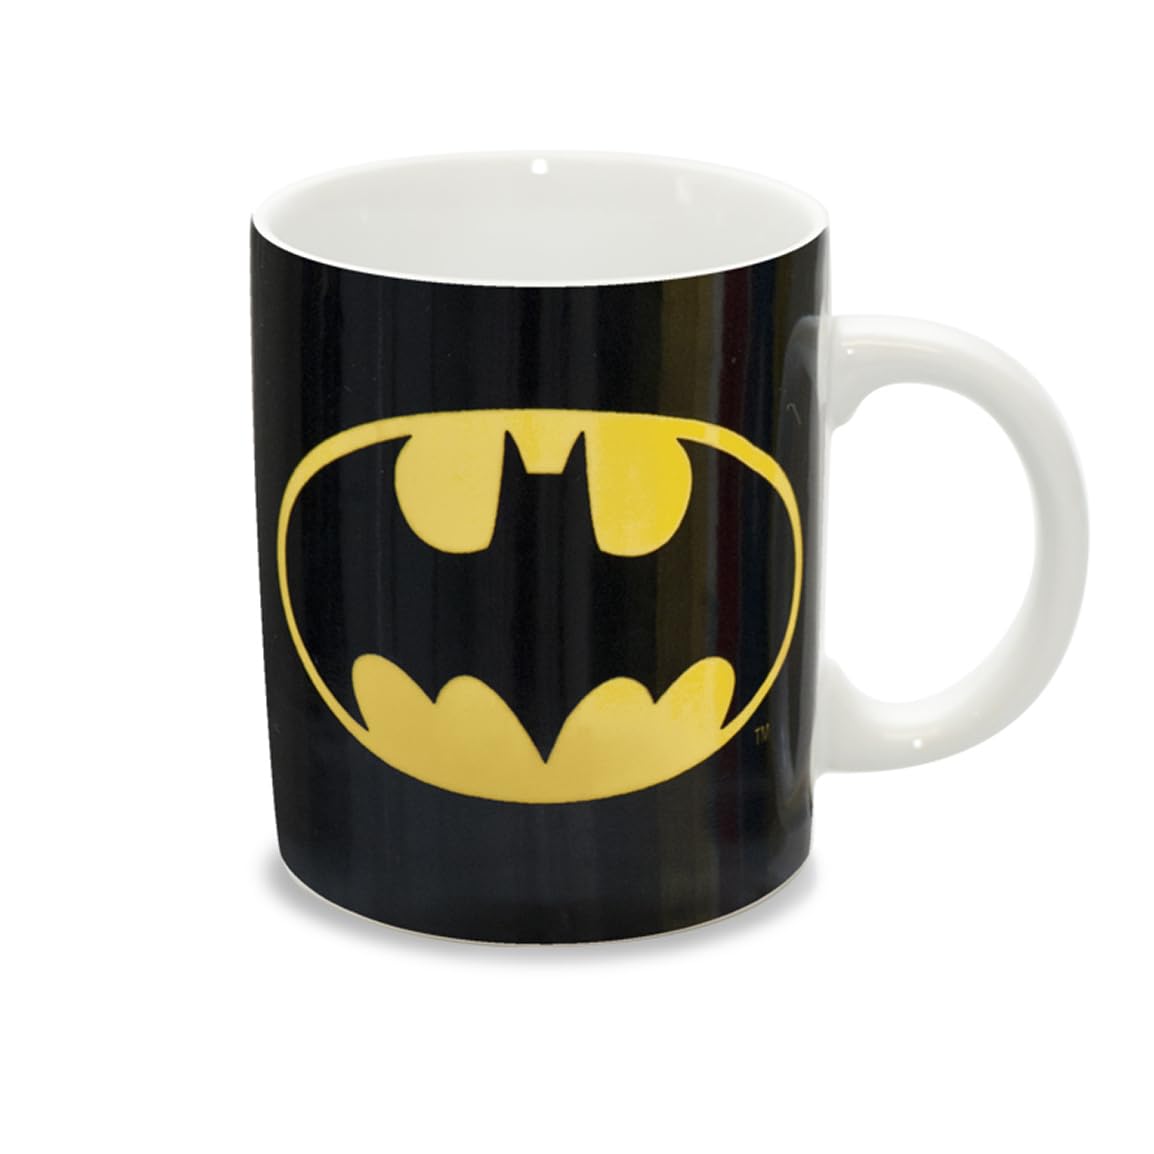 Outlet Shop  Logoshirt® DC Comics - Batman Logo I Mug - Tasse à café en porcelaine, 300 ml I Lavable au lave-vaisselle et au micro-ondes I Dans une boîte cadeau colorée I Design original sous licence sYzs8rUM7 tout pour vous